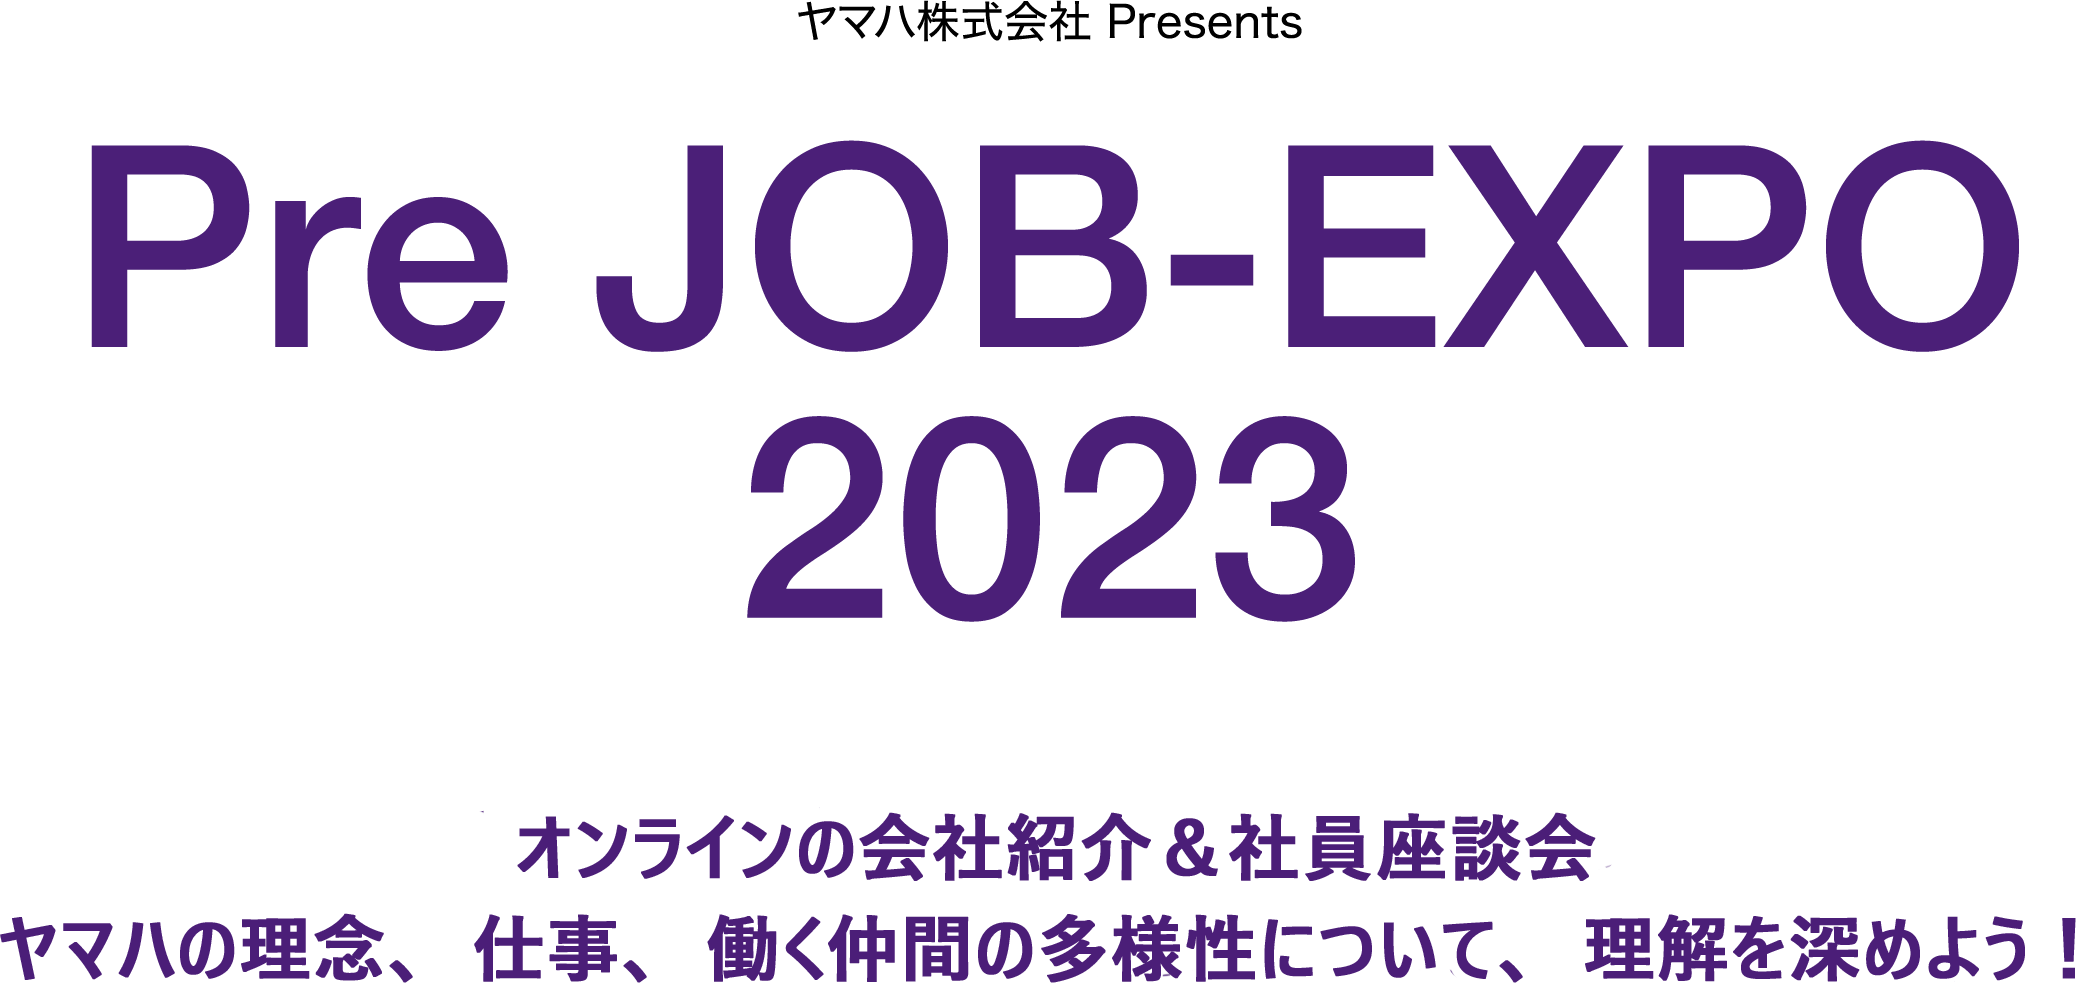 ヤマハ株式会社 Presents Pre JOB-EXPO 2023 オンラインの会社紹介＆社員座談会 ヤマハの理念、仕事、働く仲間の多様性について、理解を深めよう！